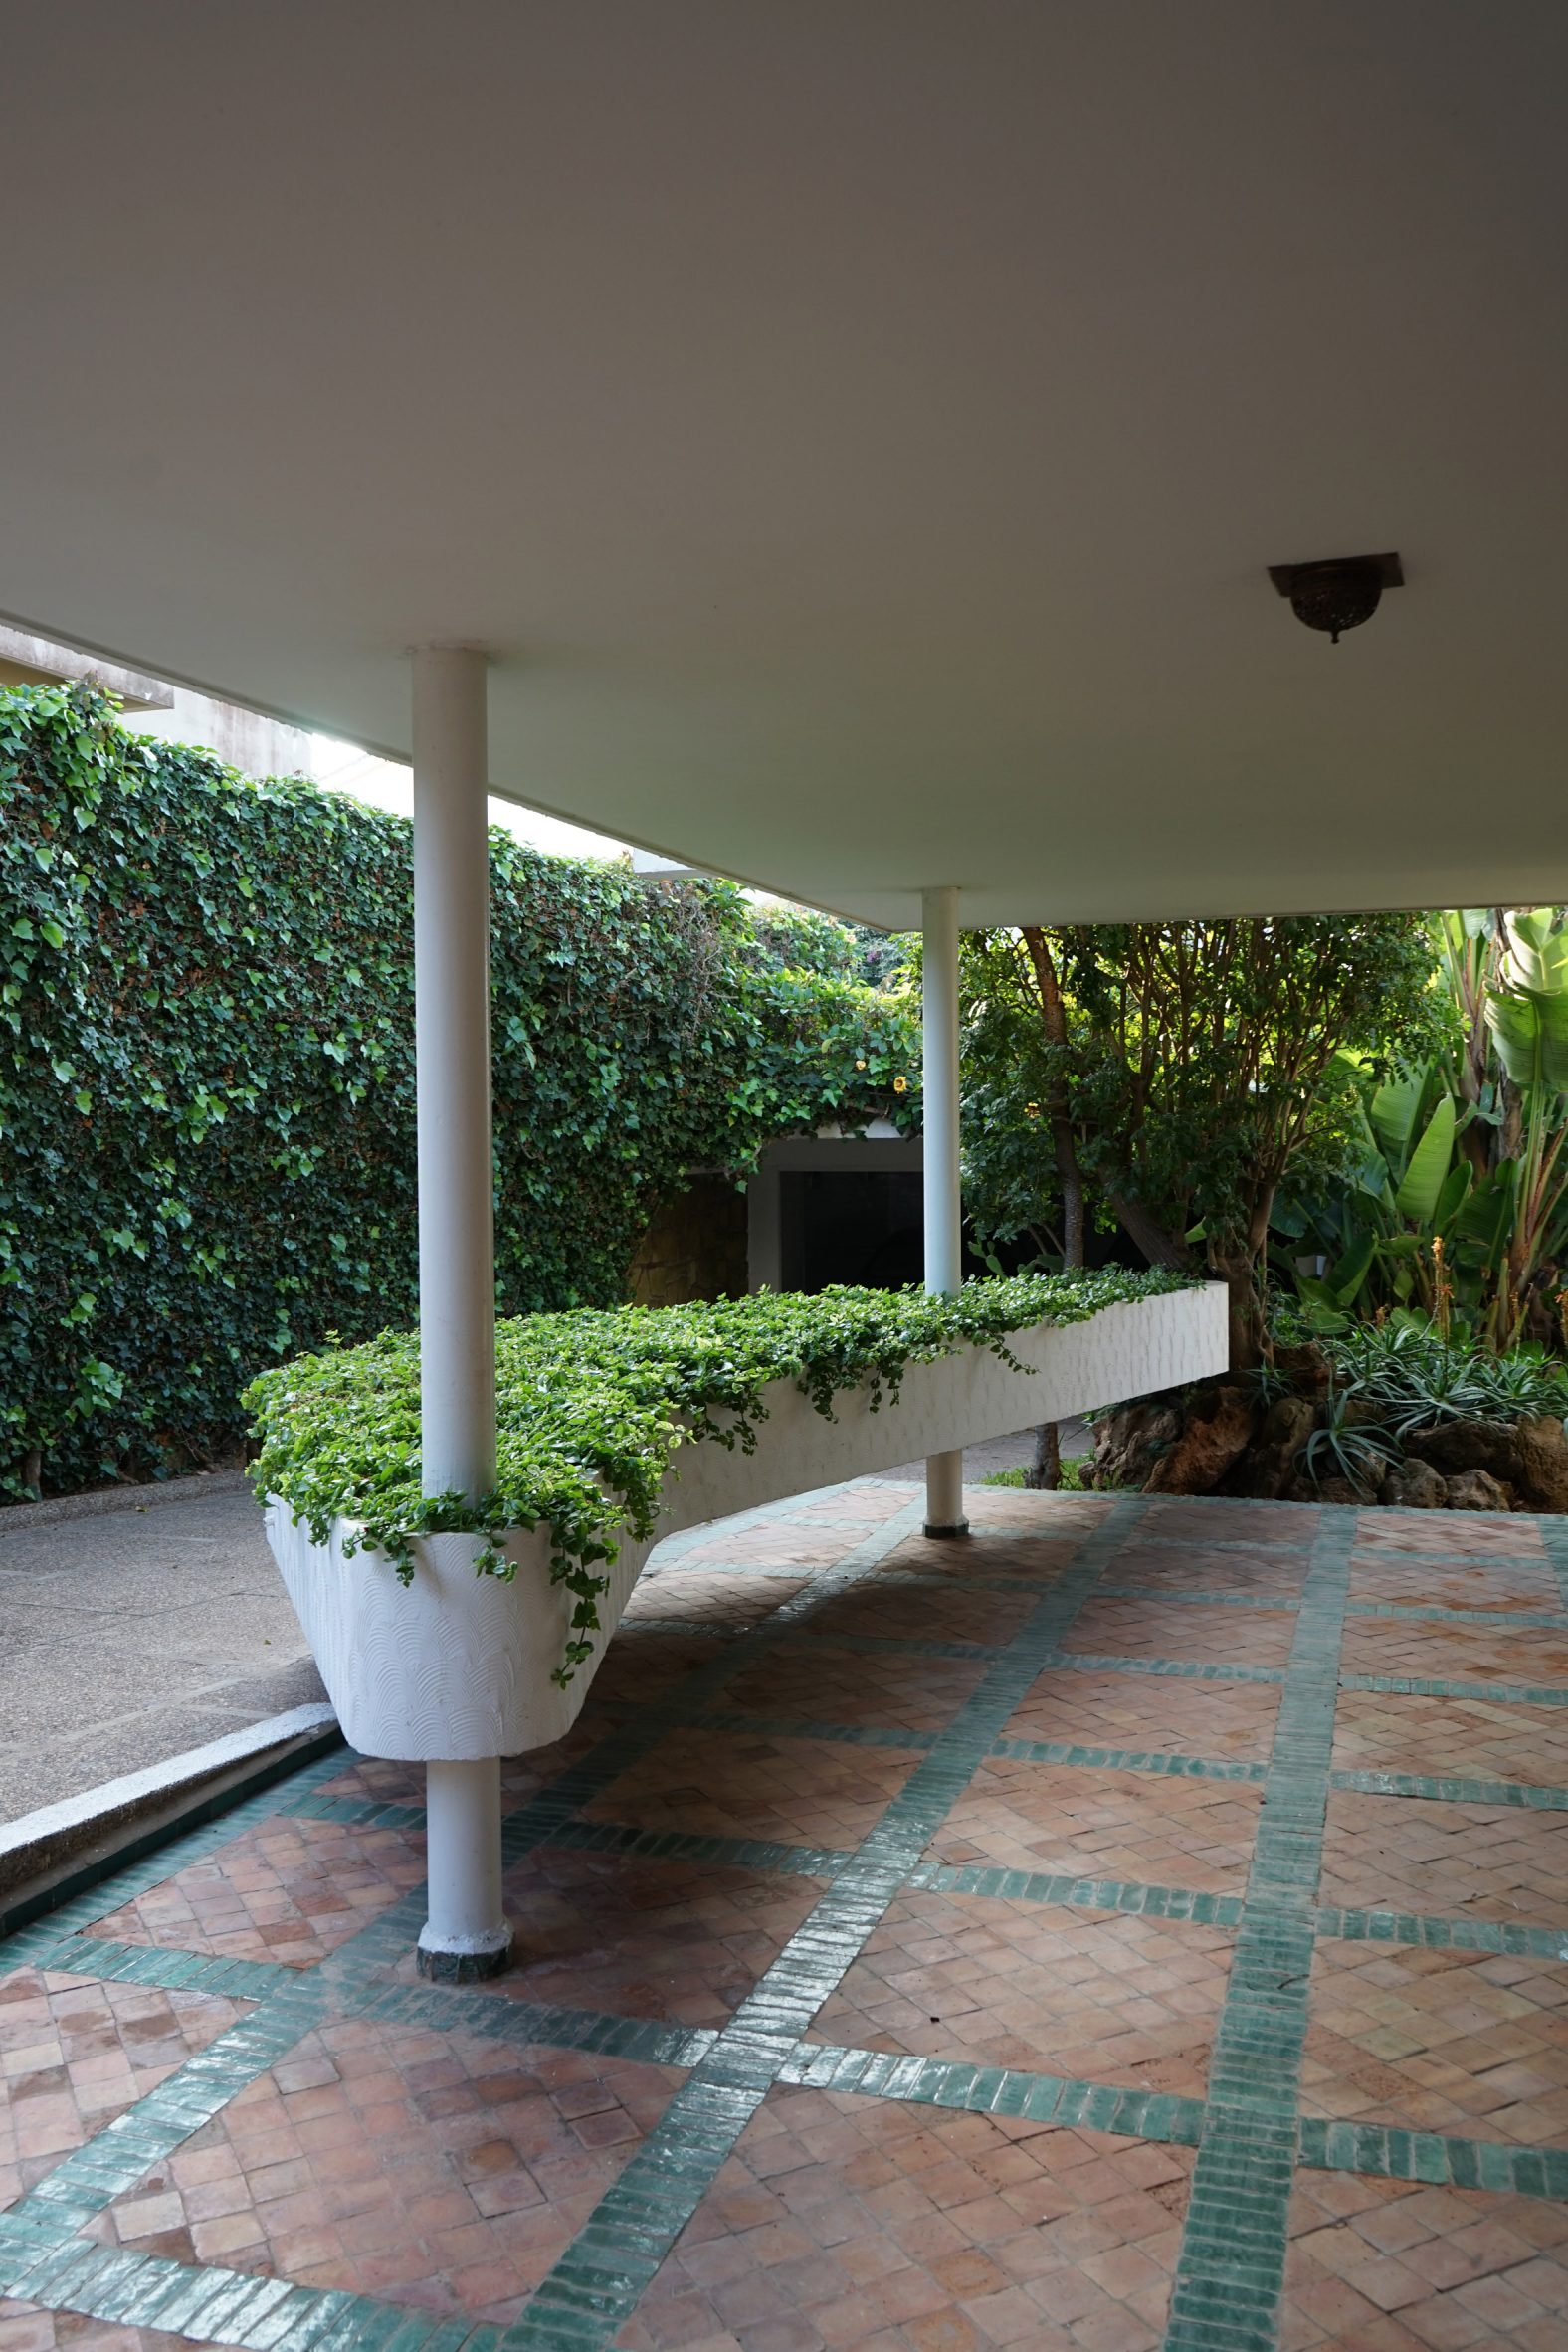 Boomerang-like planter in modernist house